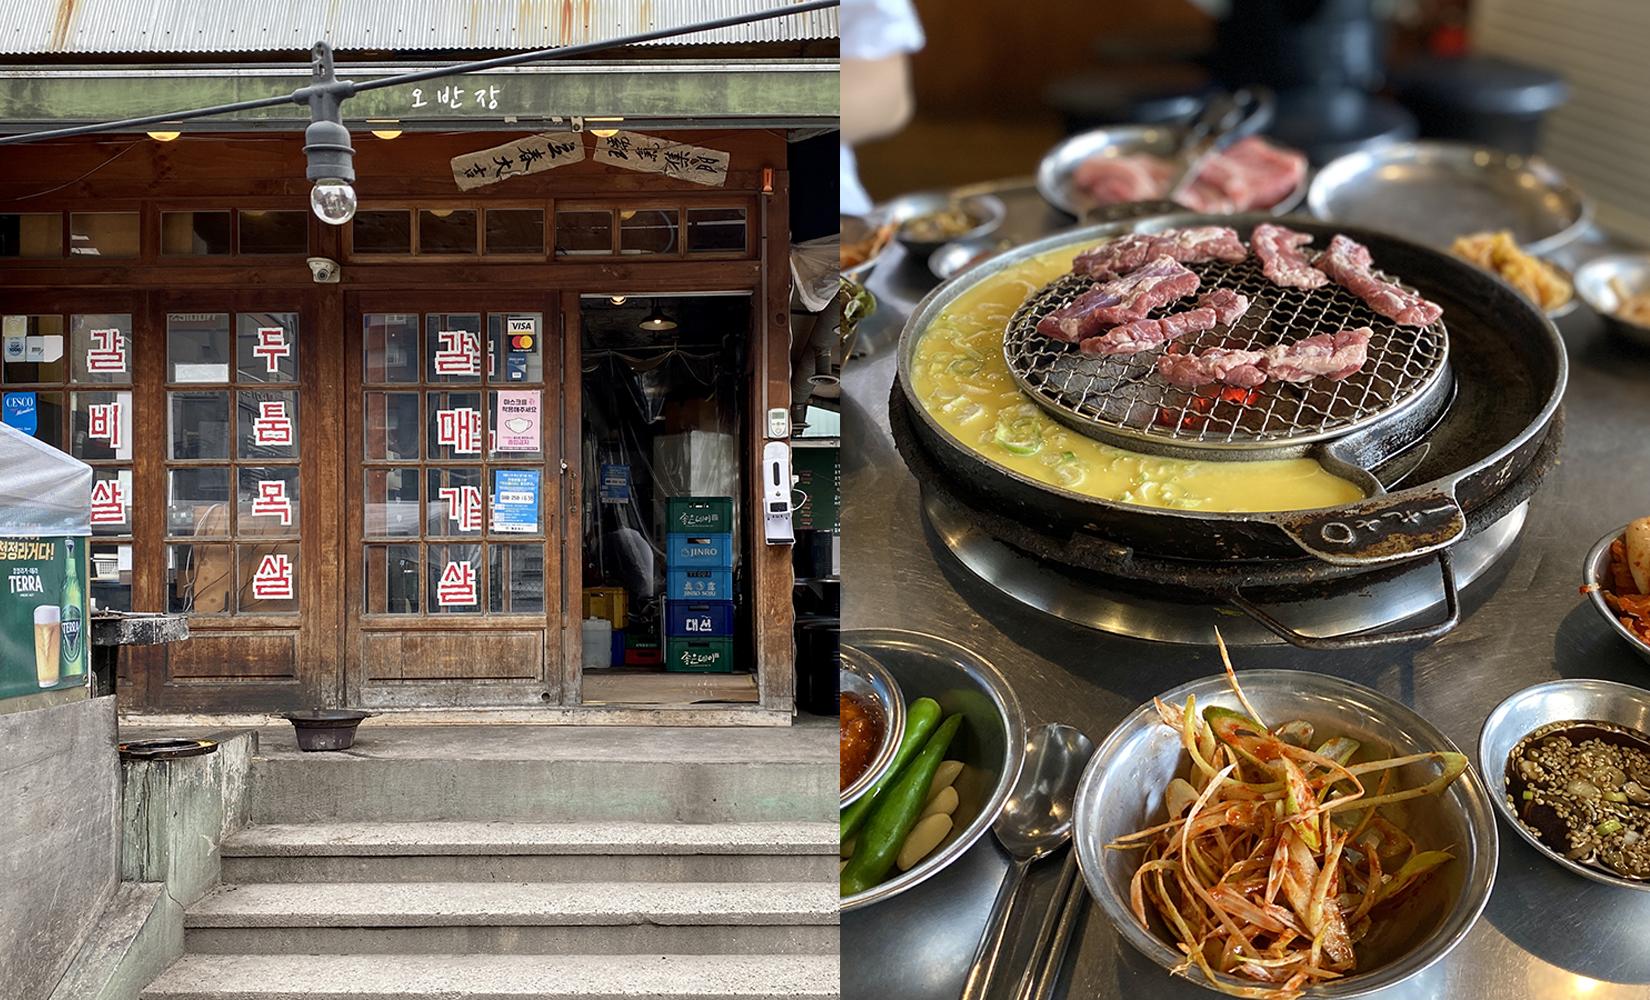 Obanjang: Quán thịt nướng Hàn Quốc nổi tiếng ở Haeundae, Busan